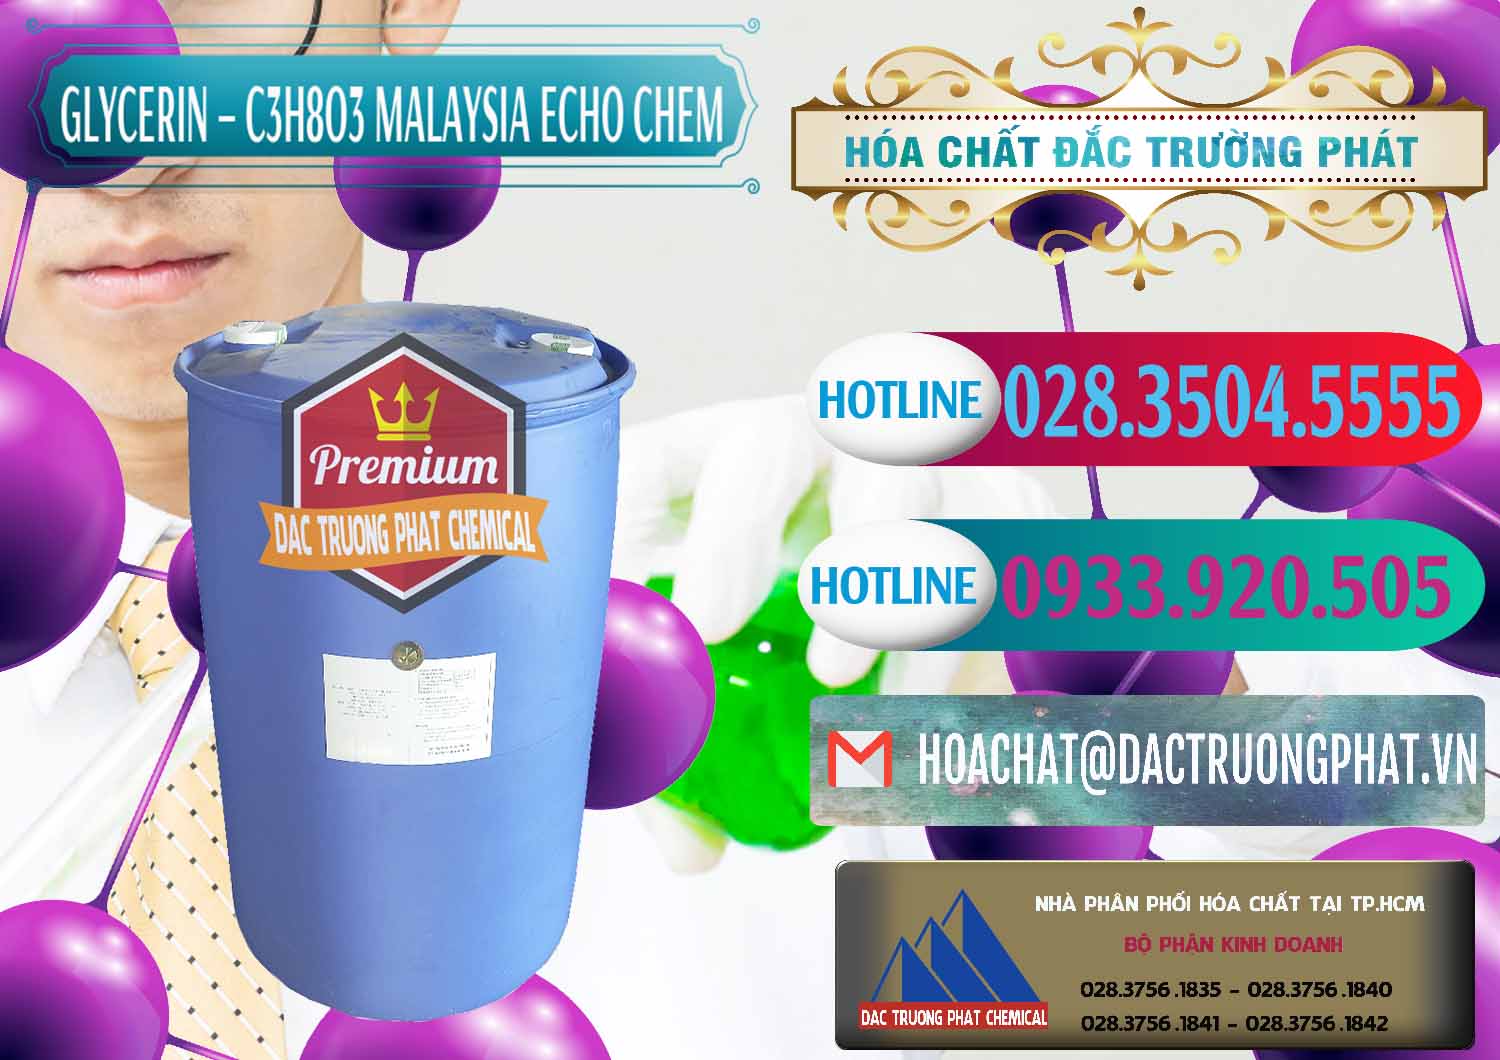 Công ty chuyên phân phối _ bán C3H8O3 - Glycerin 99.7% Echo Chem Malaysia - 0273 - Nhà phân phối - cung cấp hóa chất tại TP.HCM - truongphat.vn